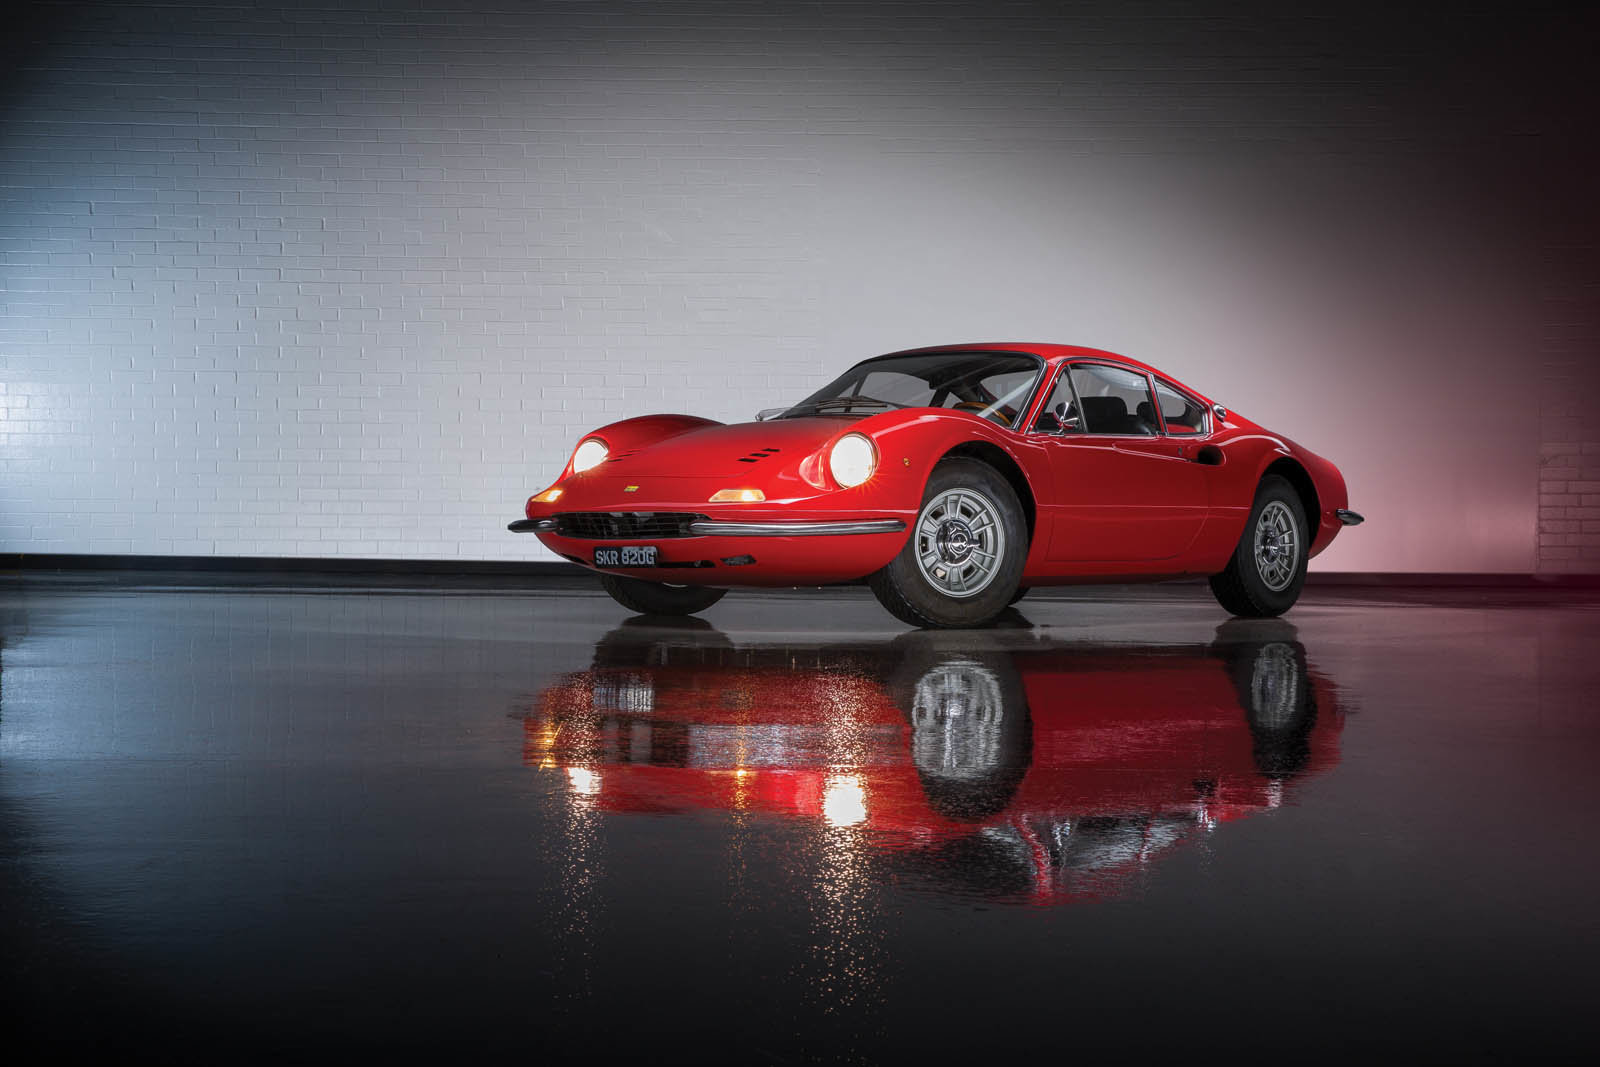 Do aukce míří fascinující sbírka 13 vozů Ferrari